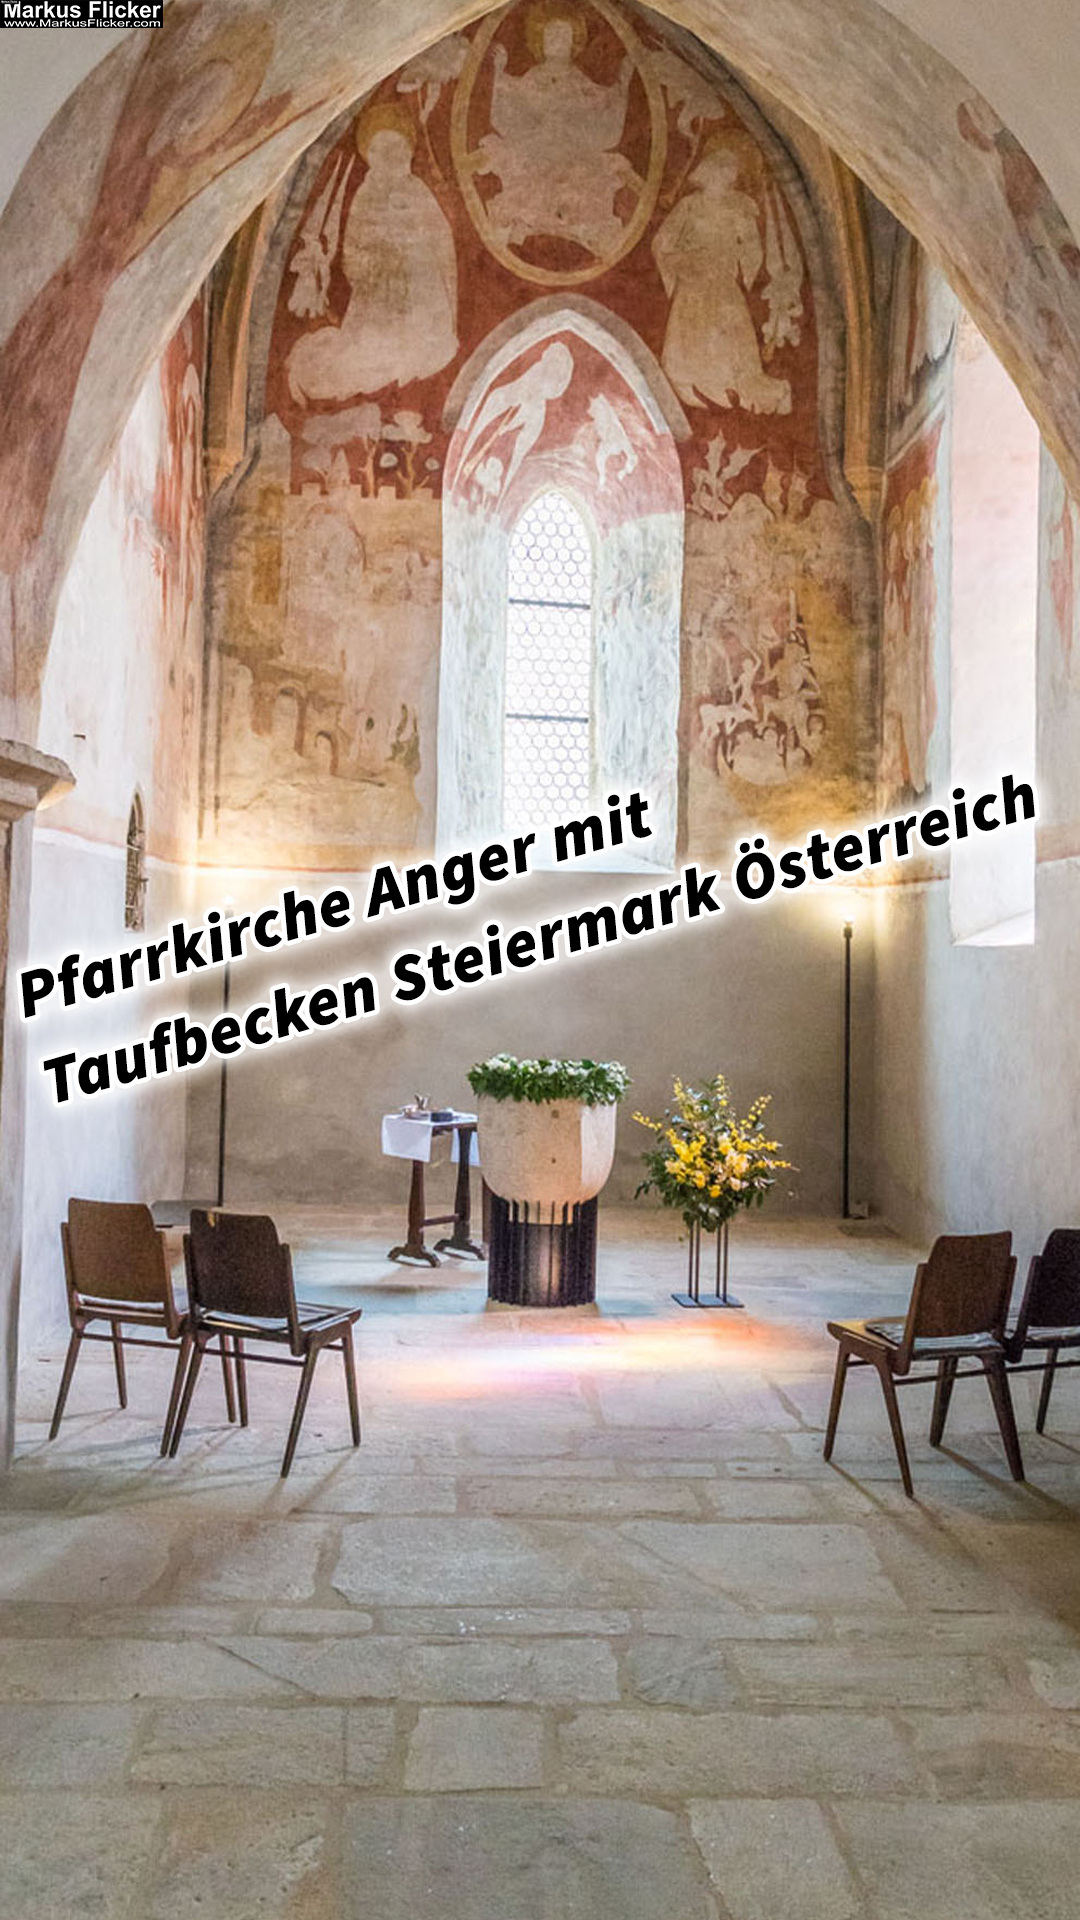 Pfarrkirche Anger mit Taufbecken Steiermark Österreich